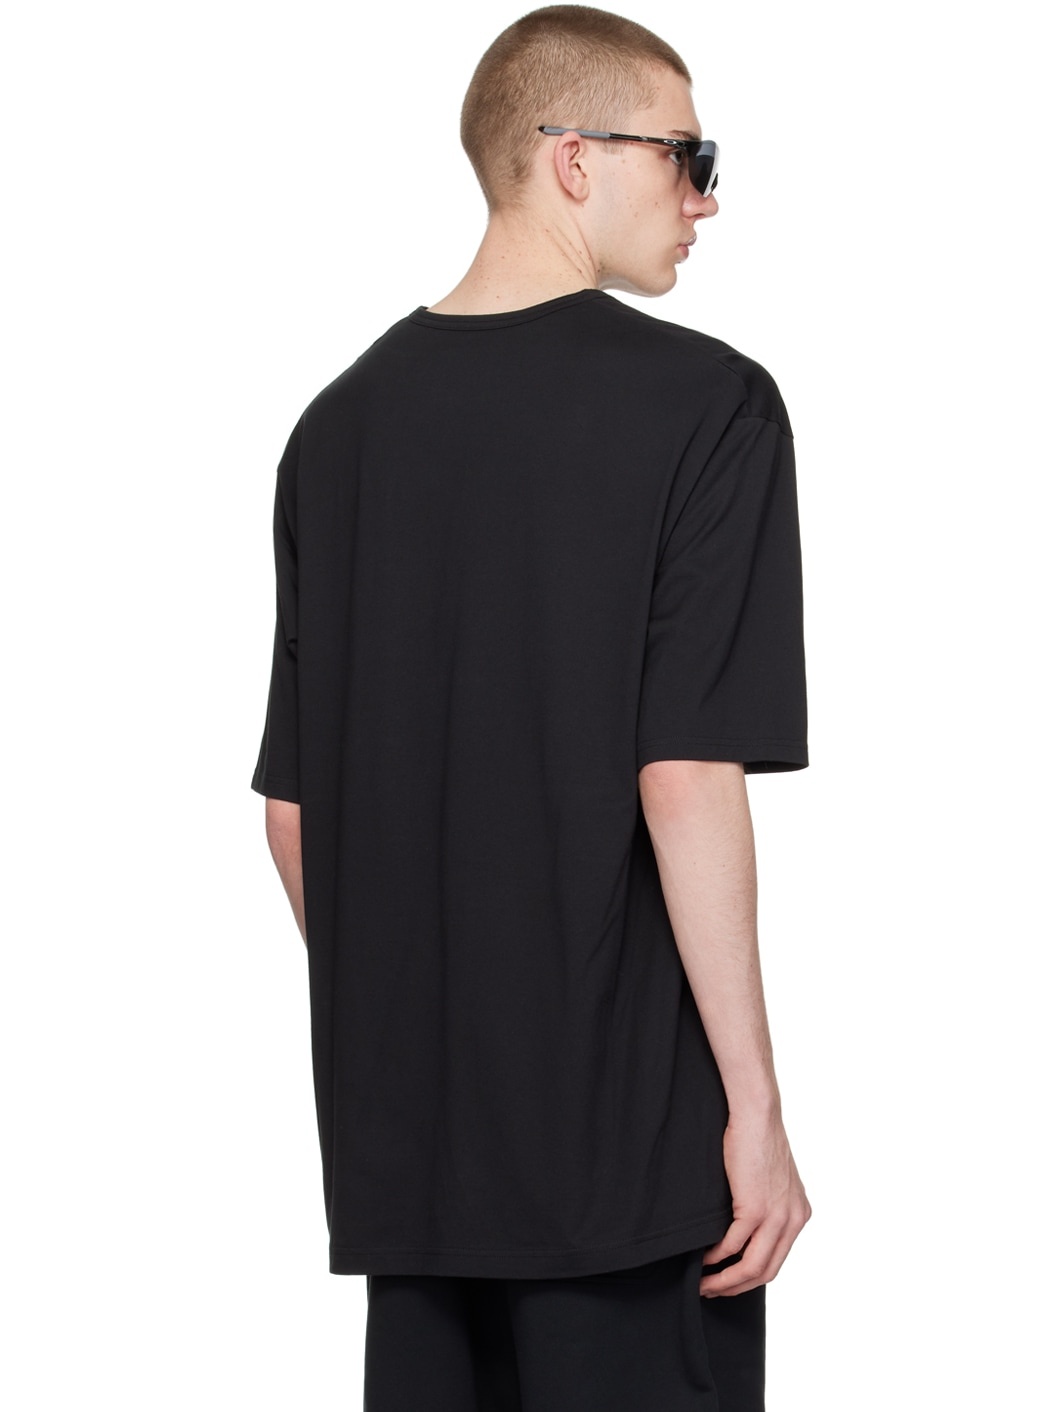 Black Boxy T-Shirt - 3